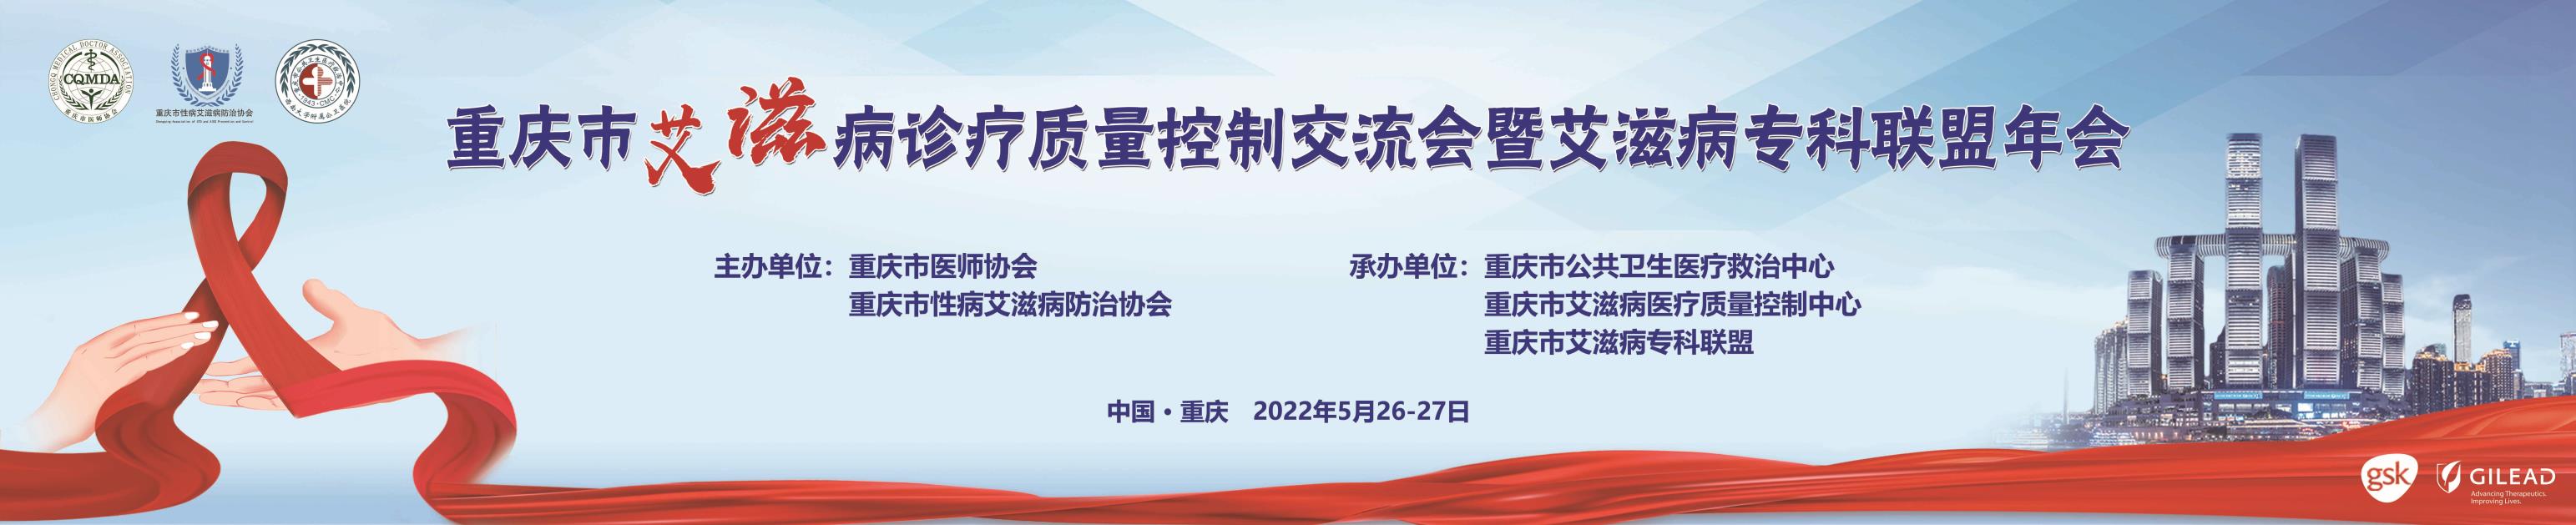 重庆市艾滋病诊疗质量控制交流会暨艾滋病专科联盟年会